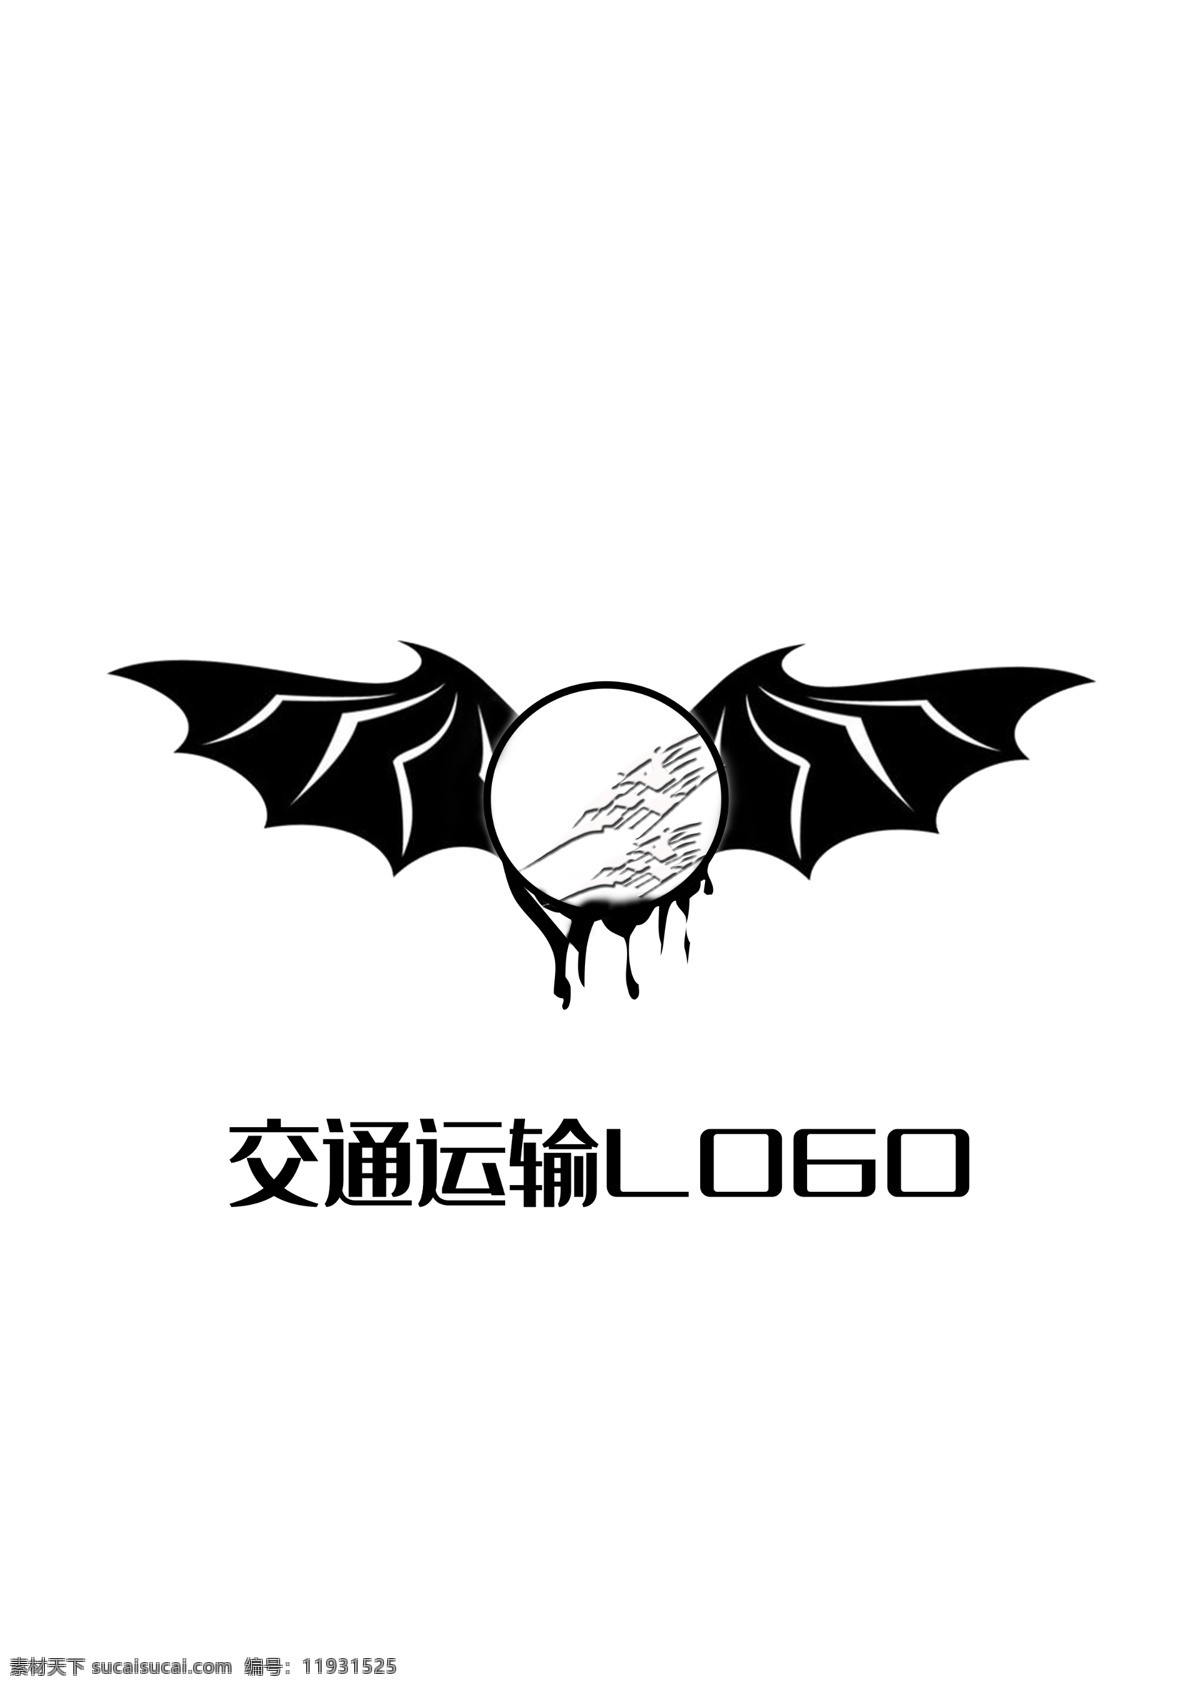 交通运输 logo 黑 飞翔 快速 物流 直达 蝙蝠 交通 运输